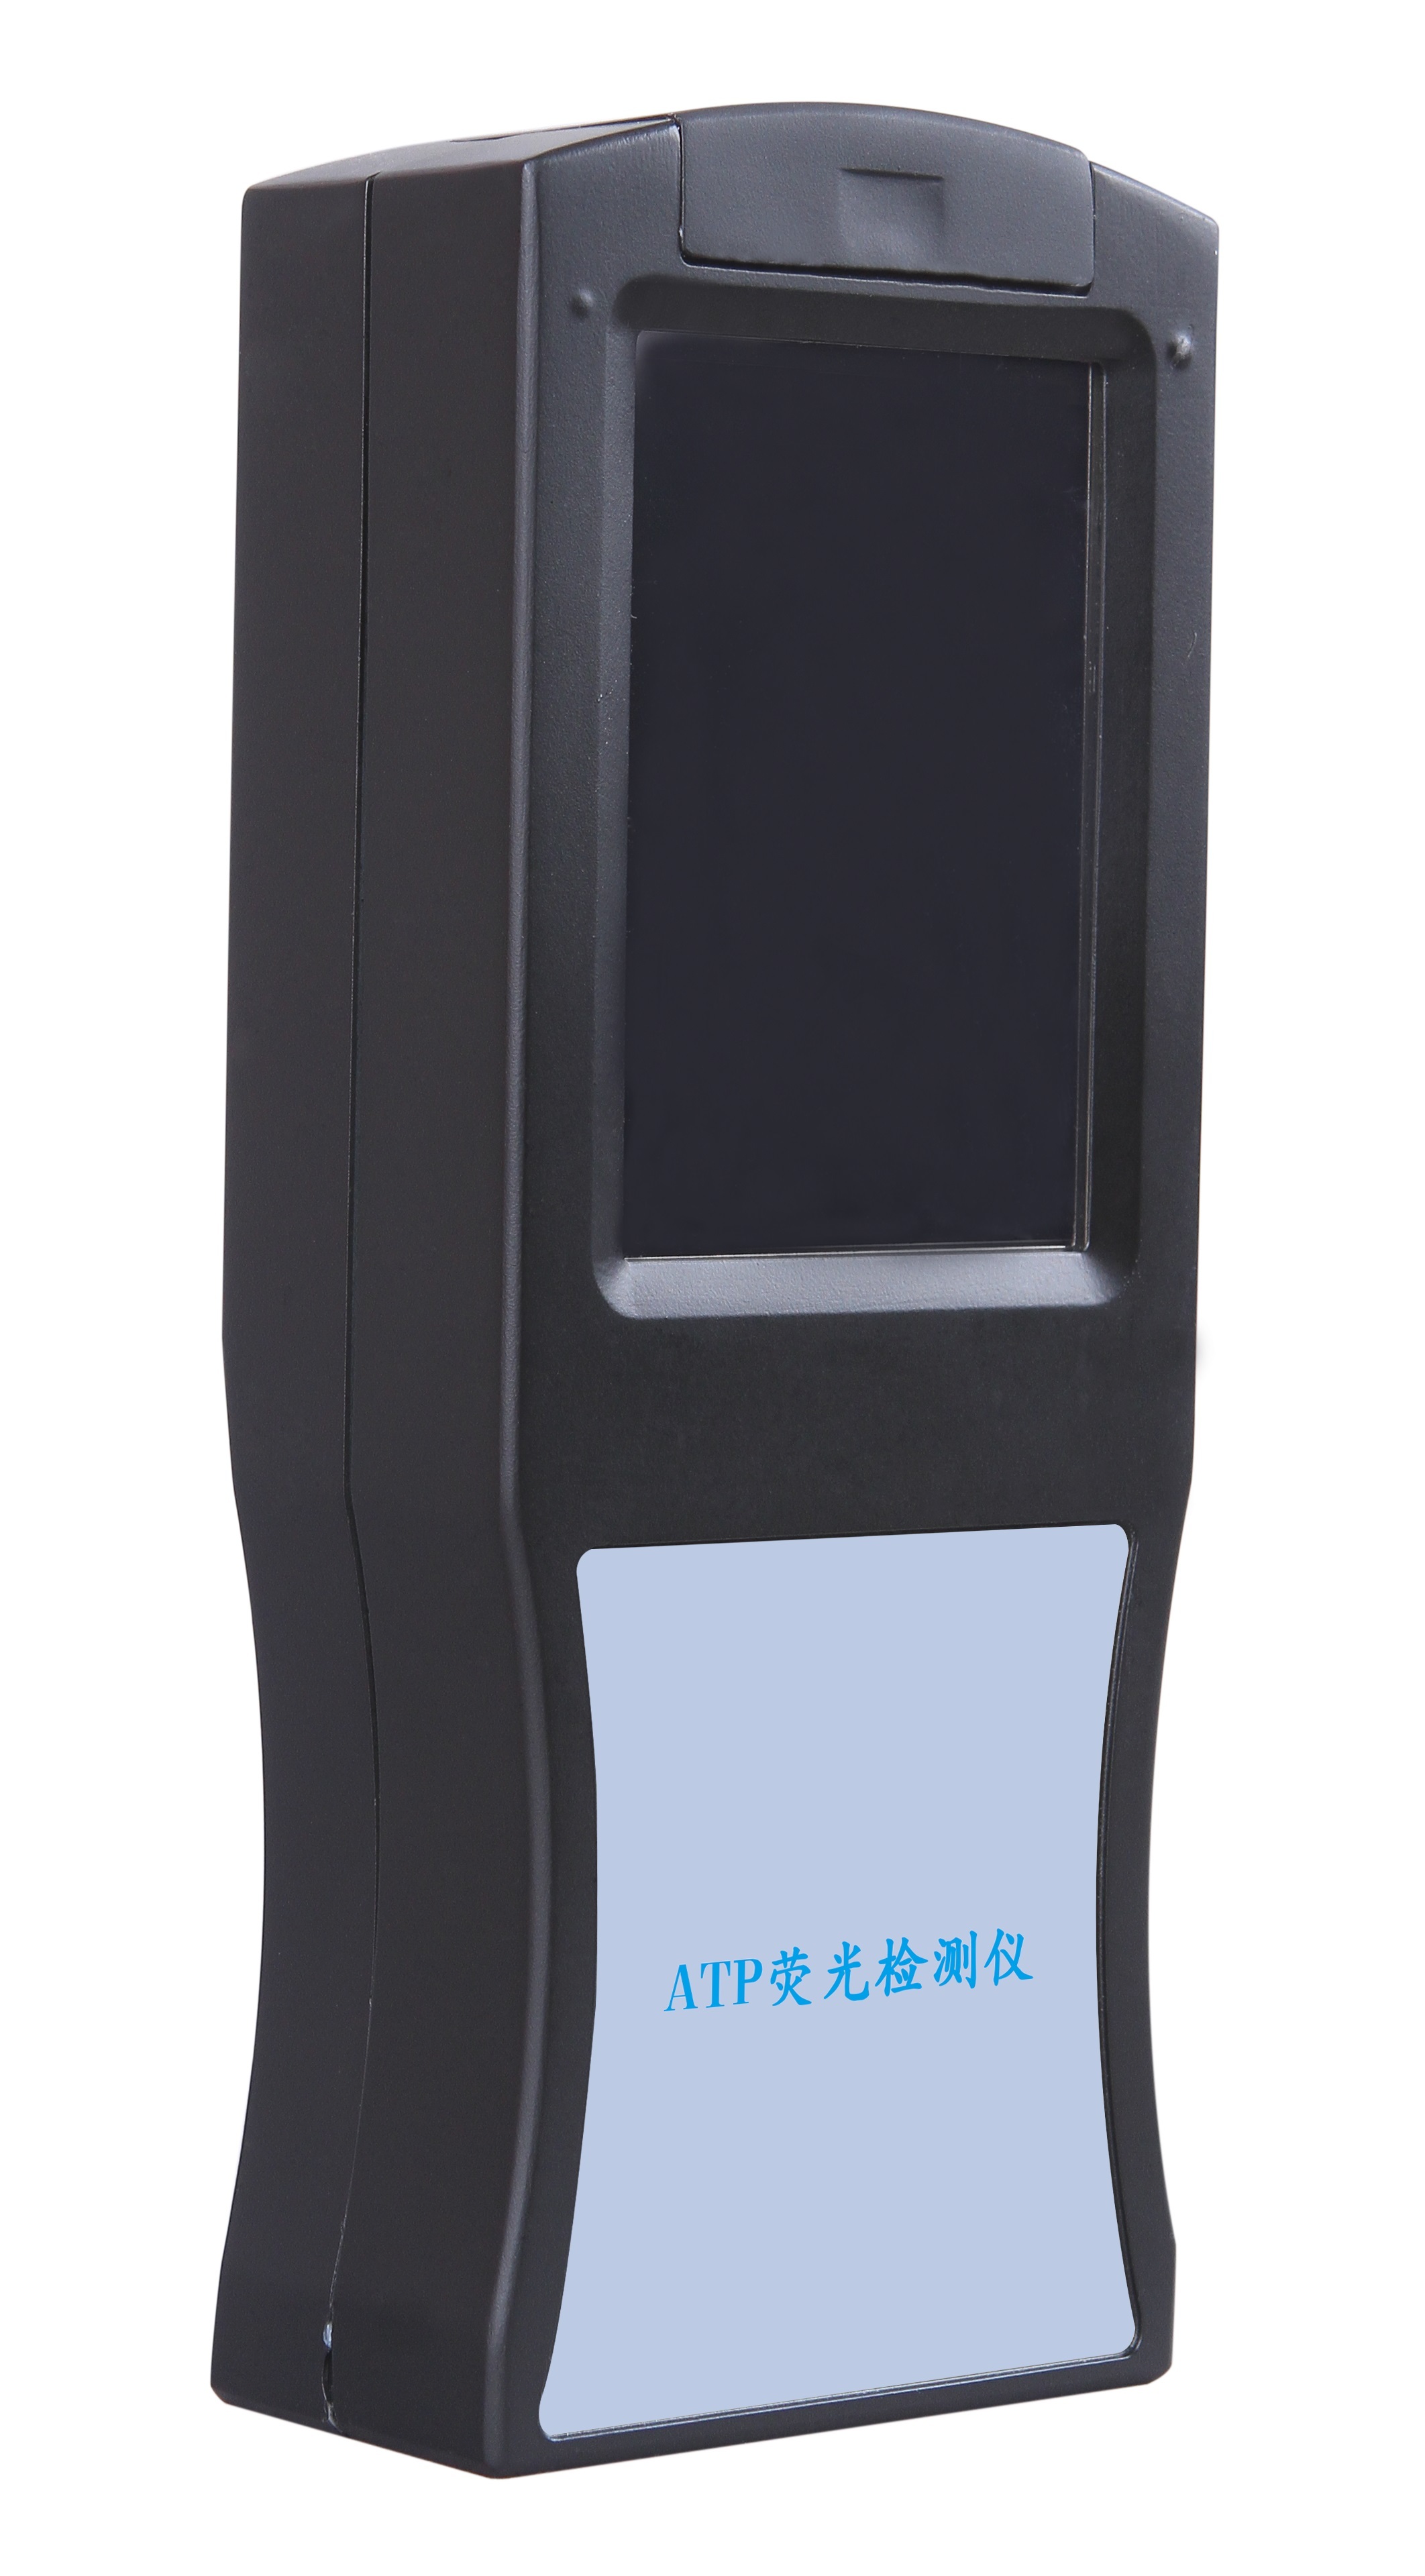 手持式ATP测定仪厂家现货深圳市芬析仪器制造有限公司